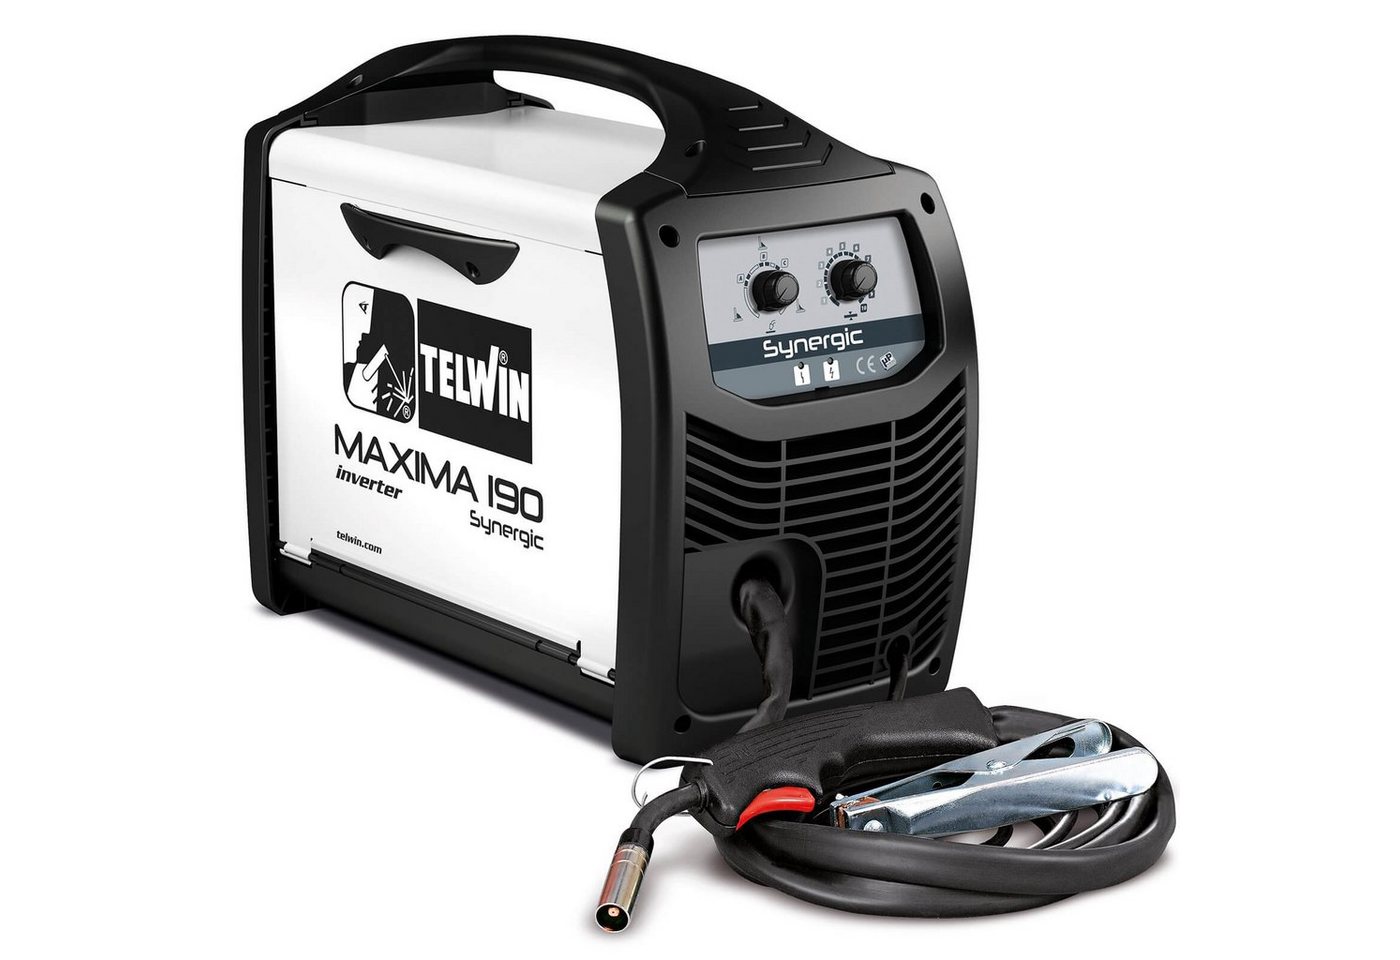 TELWIN Elektroschweißgerät Telwin Elements MAXIMA 190 SYNERGIC Schutzgas Schweißgerät 170A von TELWIN